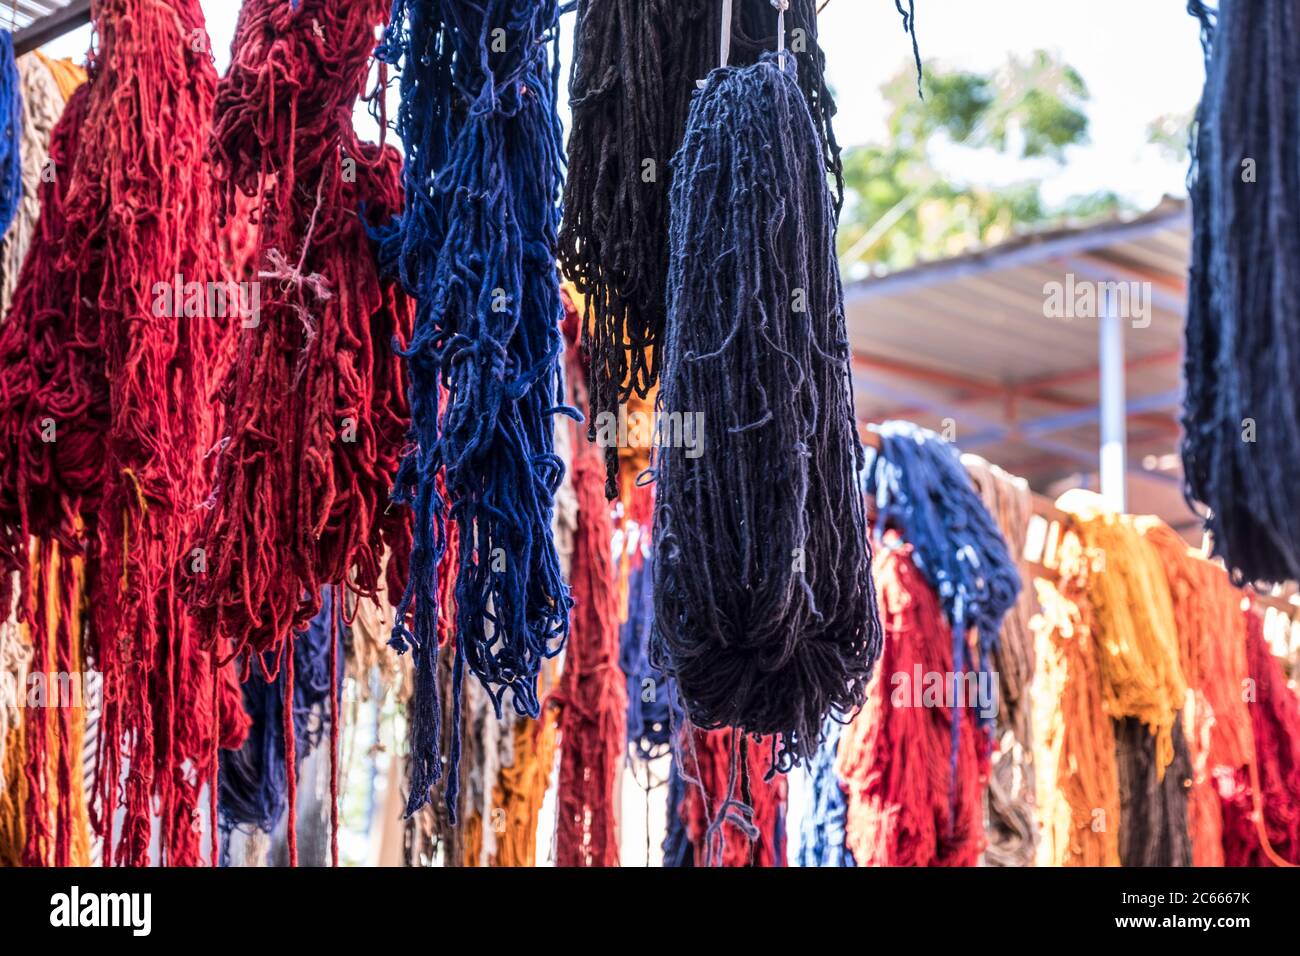 Lana colorata a secco appesa nel distretto di tintura di Marrakech, Marocco Foto Stock